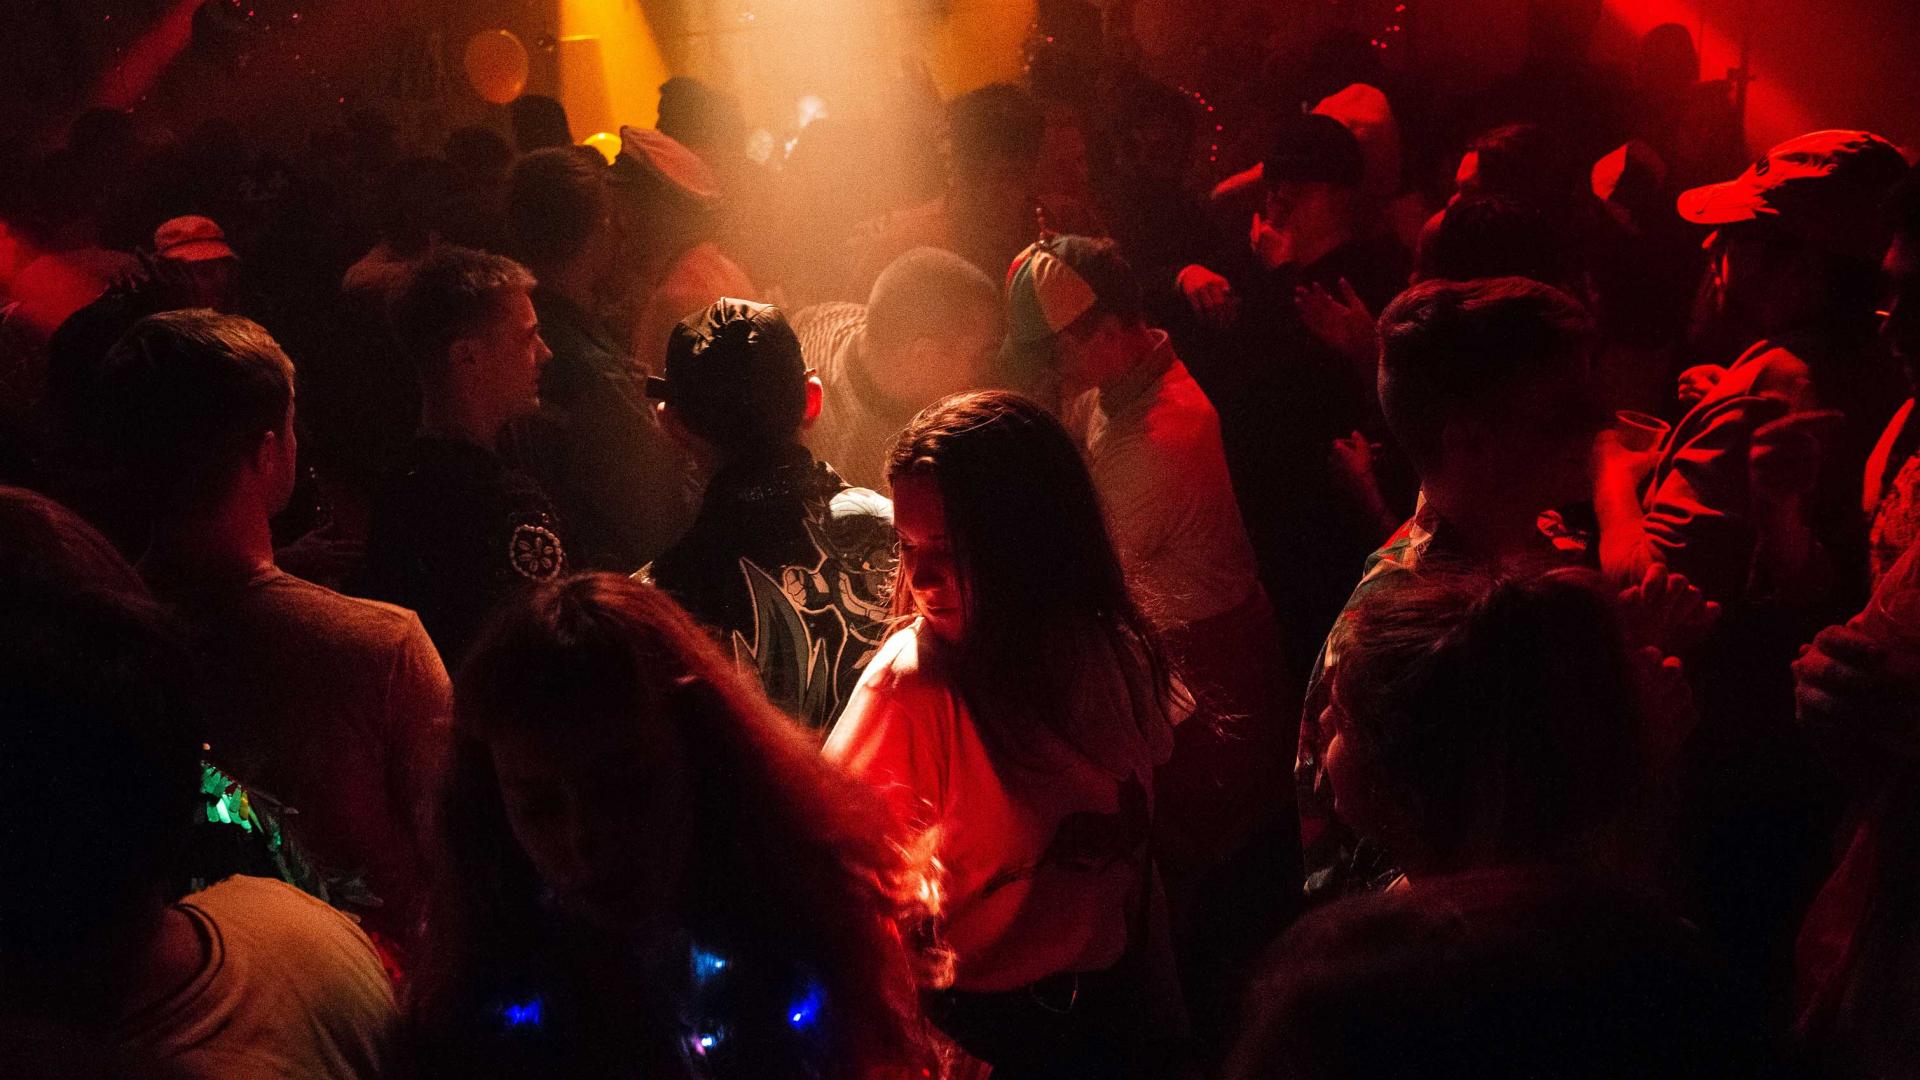 Dansende mensen in de club met rood en geel licht